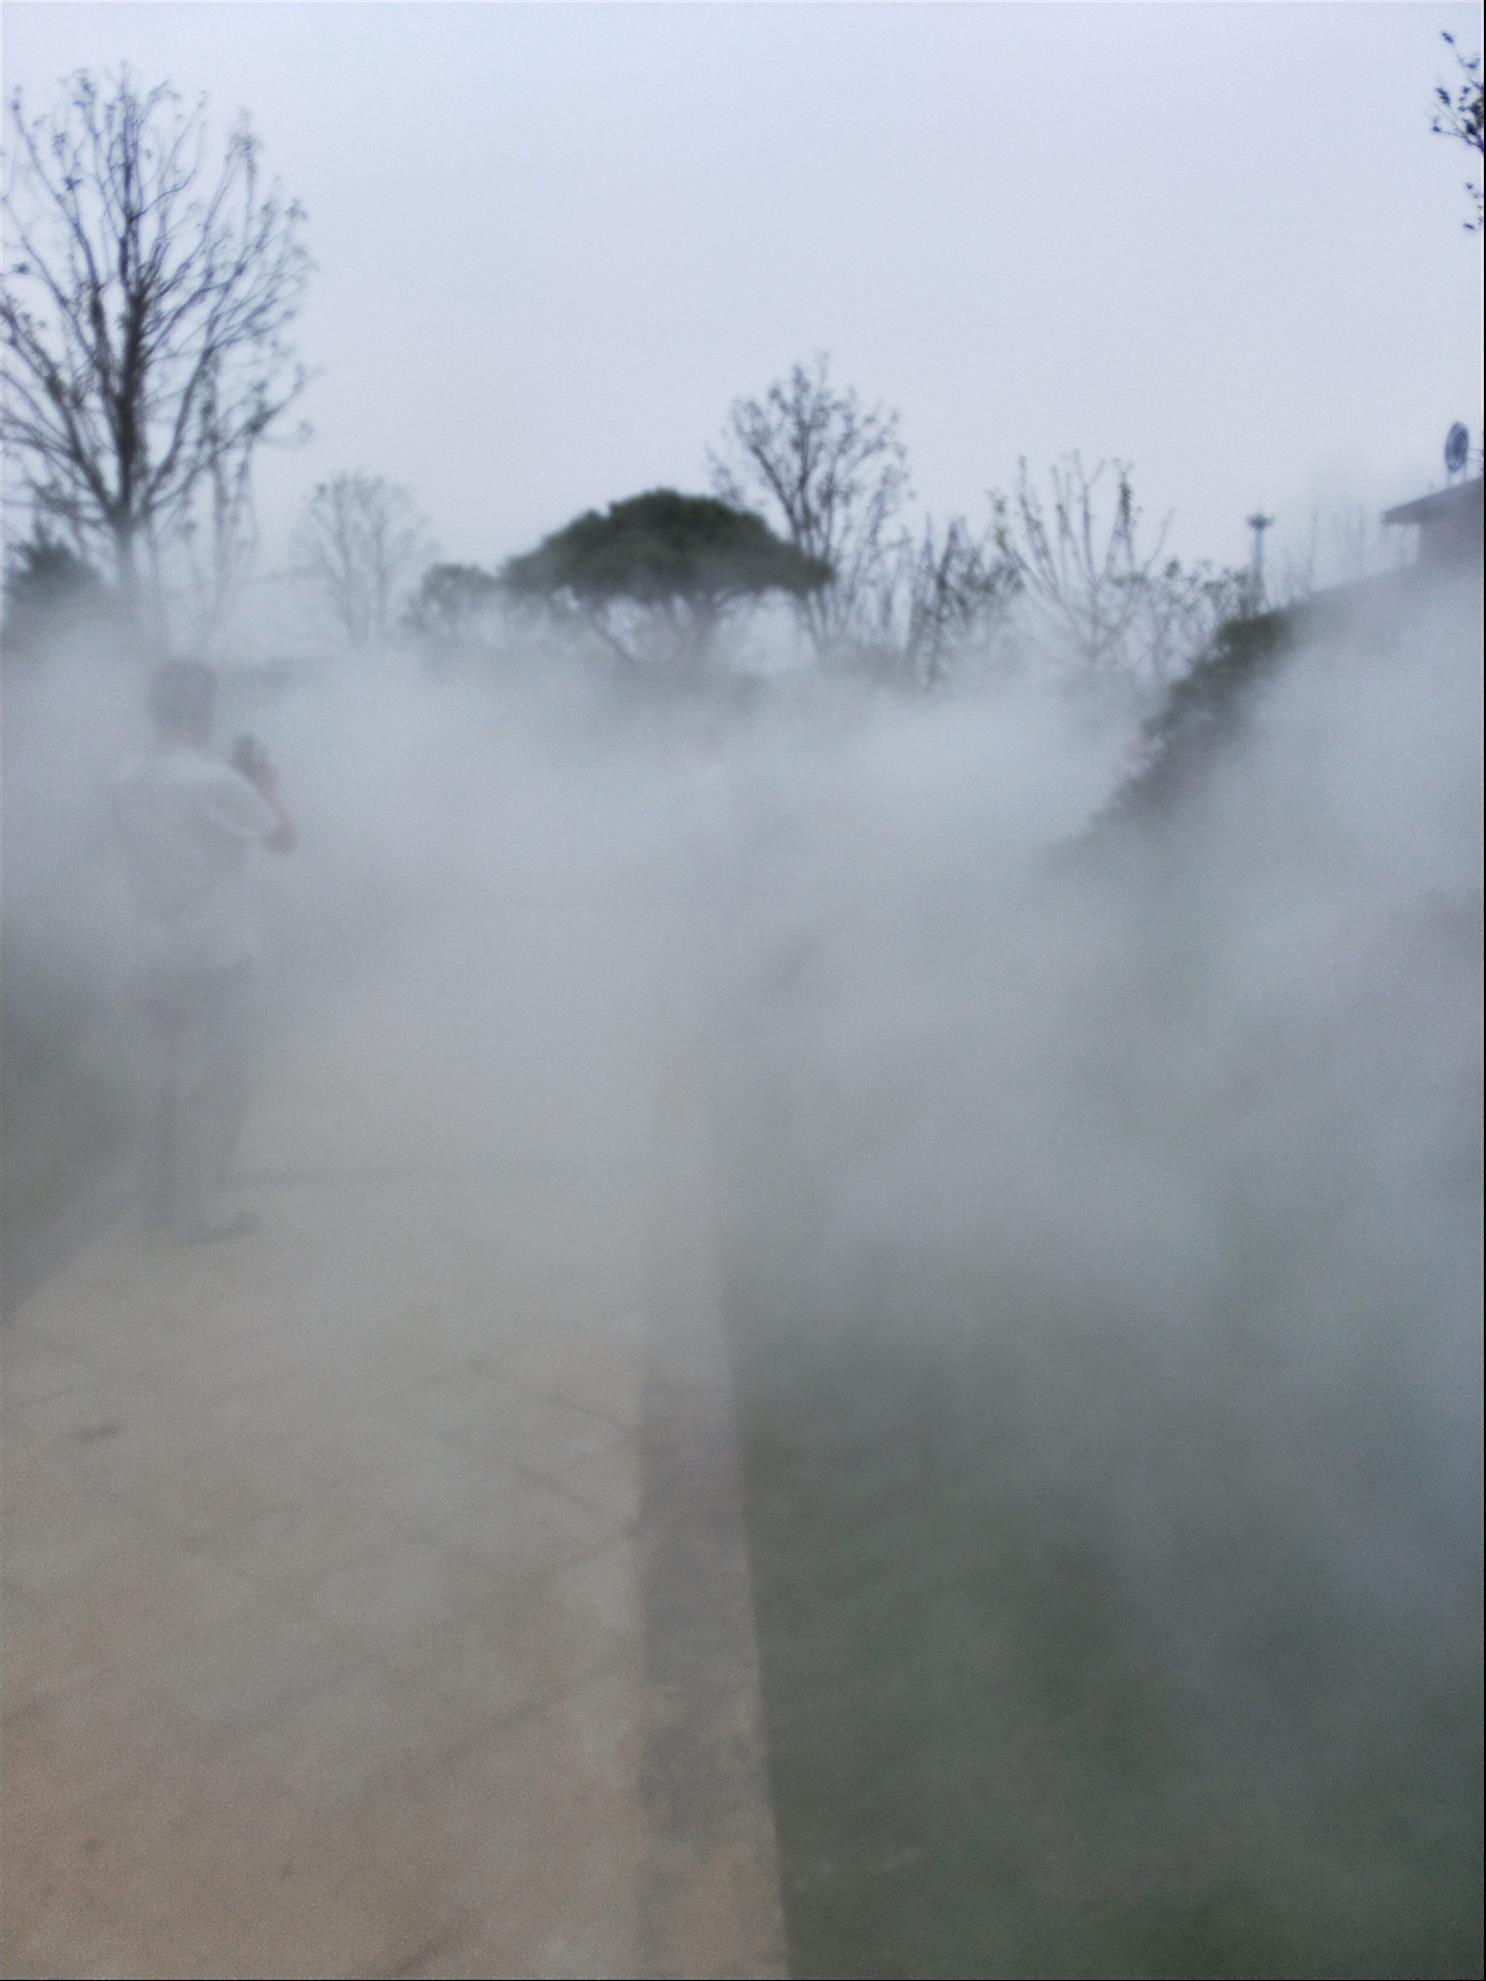 丽江园林假山造雾景观 支持定制